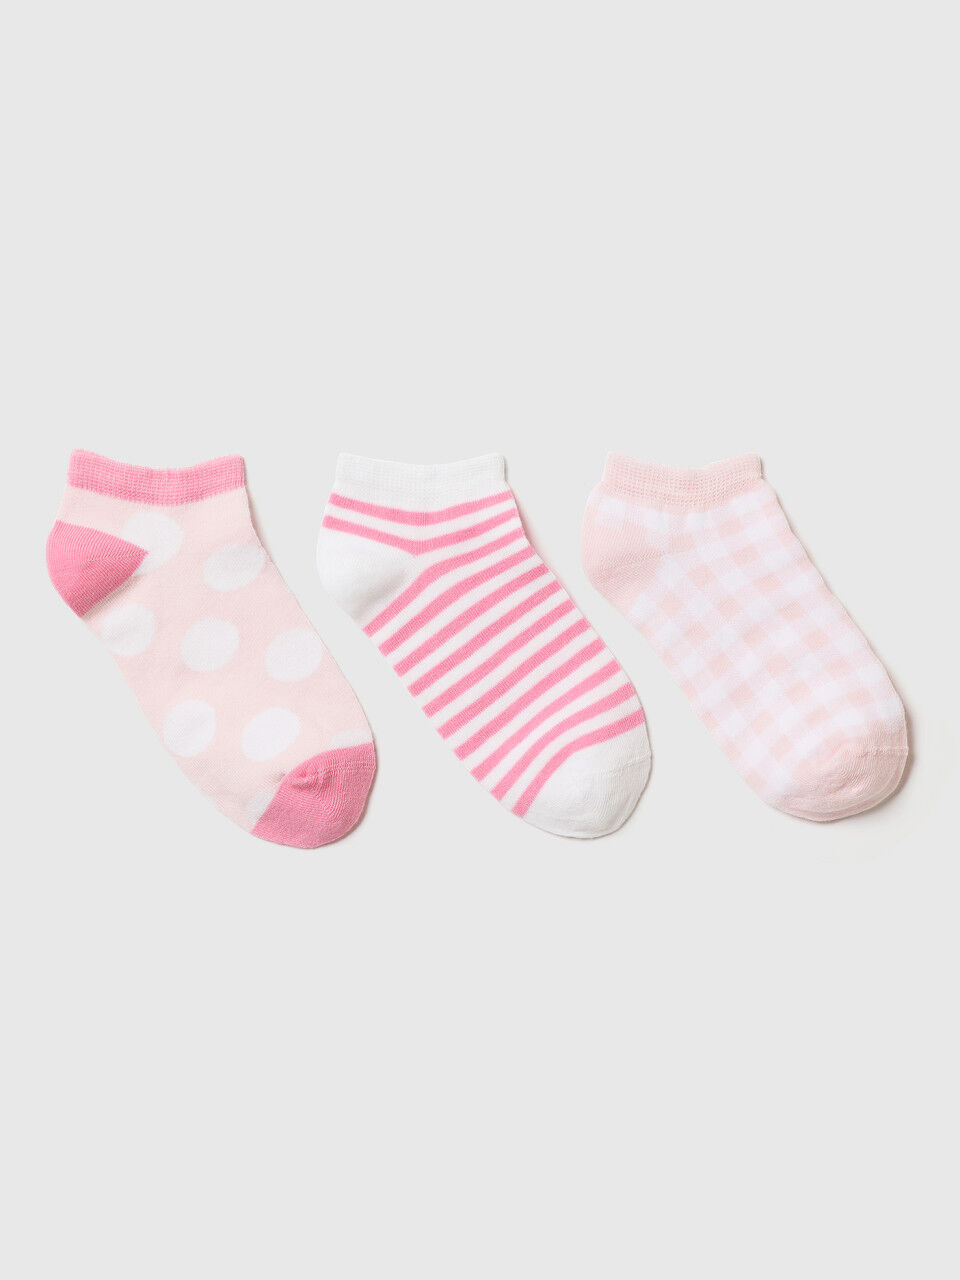 Three pairs of short socks